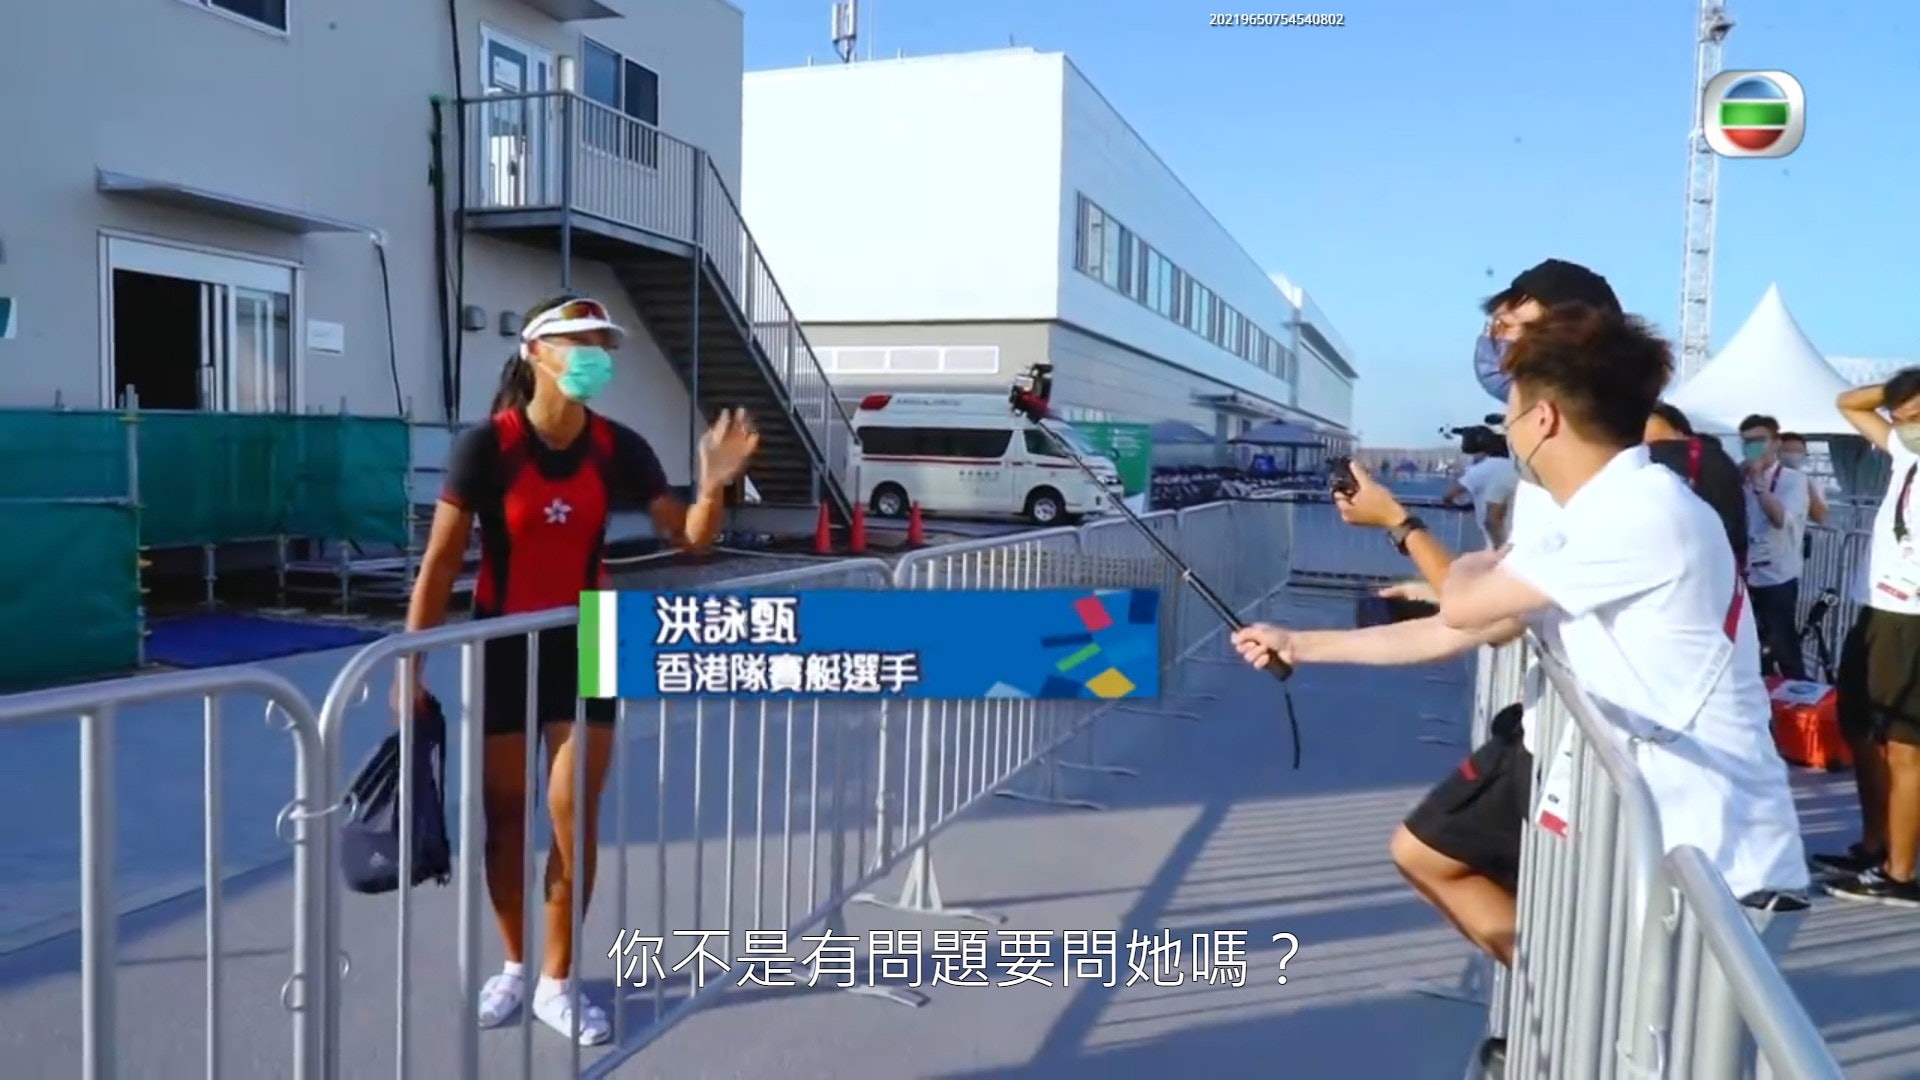 周奕玮和吴业坤叫停香港选手洪咏甄做访问，结果却没有东西问。